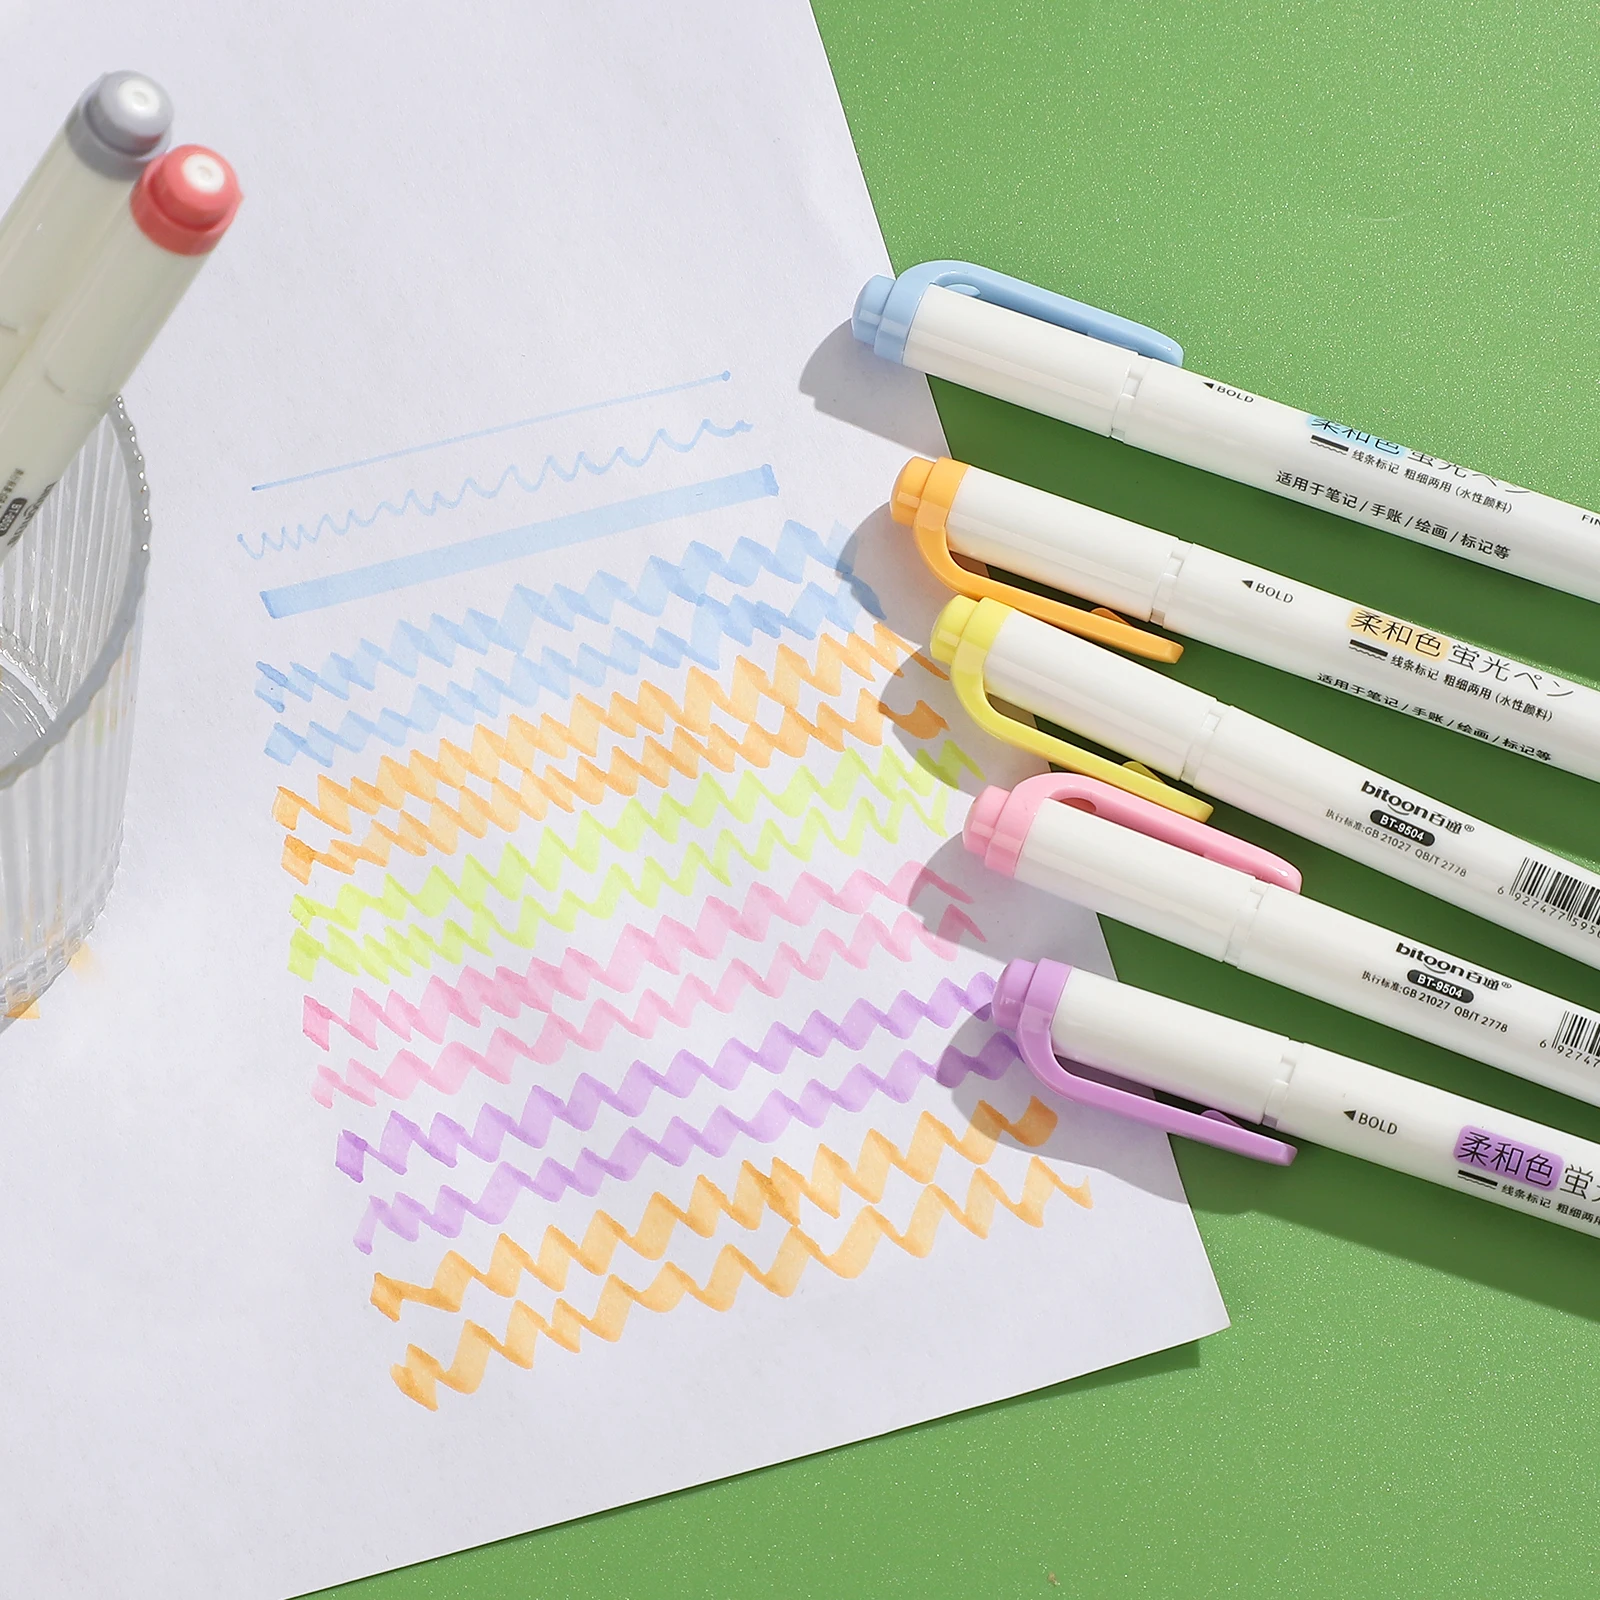 5 teile/satz doppel endige Augenschutz Text marker Set helle Farben Zeichnung Drucks tift kreative DIY Student liefert Briefpapier